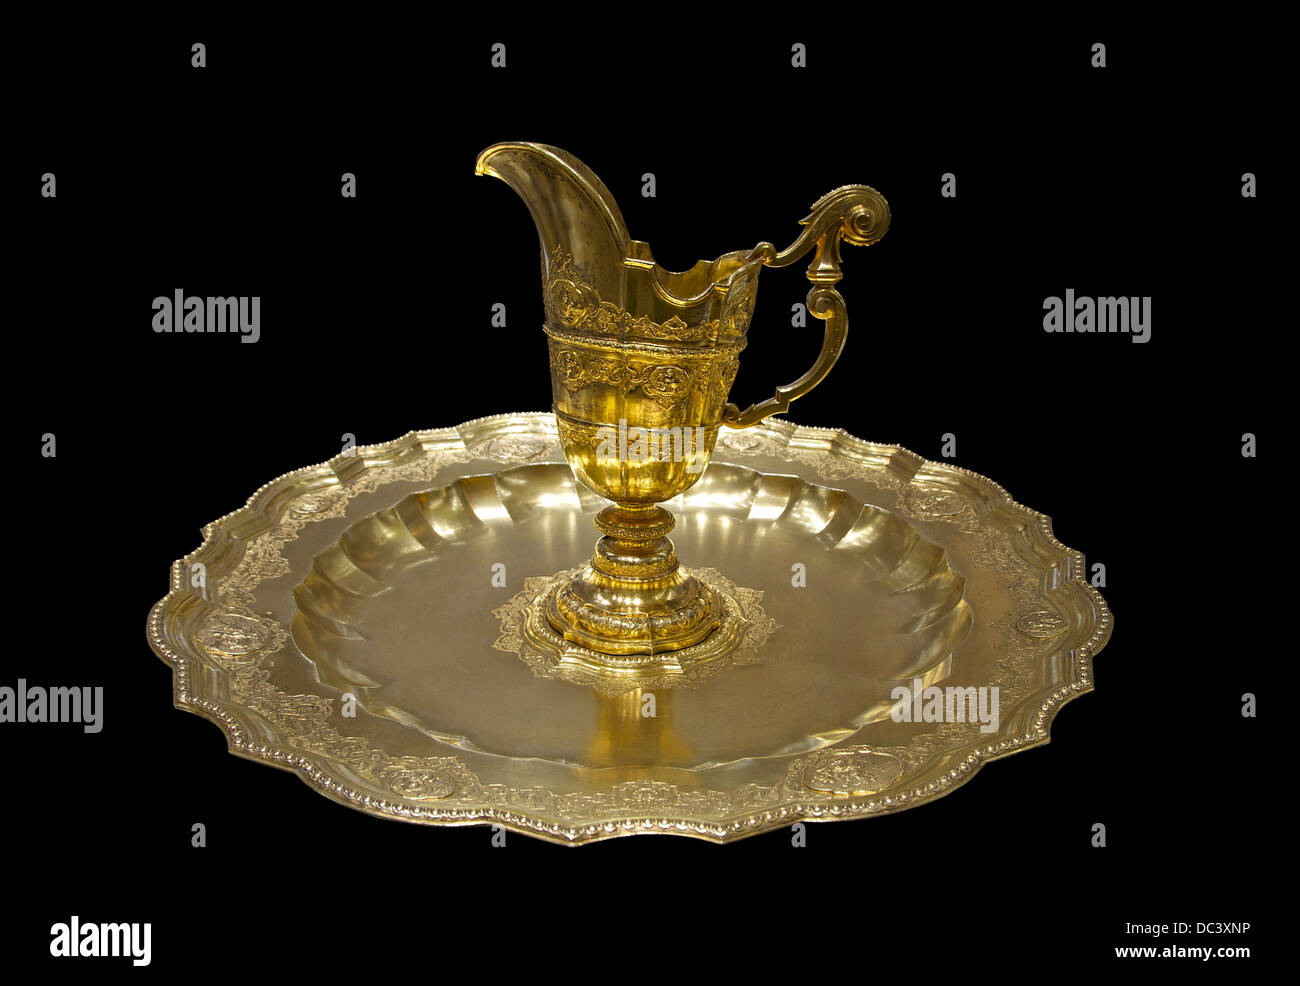 Ein vergoldeter Ewer auf einem goldenen Teller, der die der Kaiserin Maria-Theresia, Silberkammer, Hofburg Palast, Wien, Österreich gehörte. Stockfoto